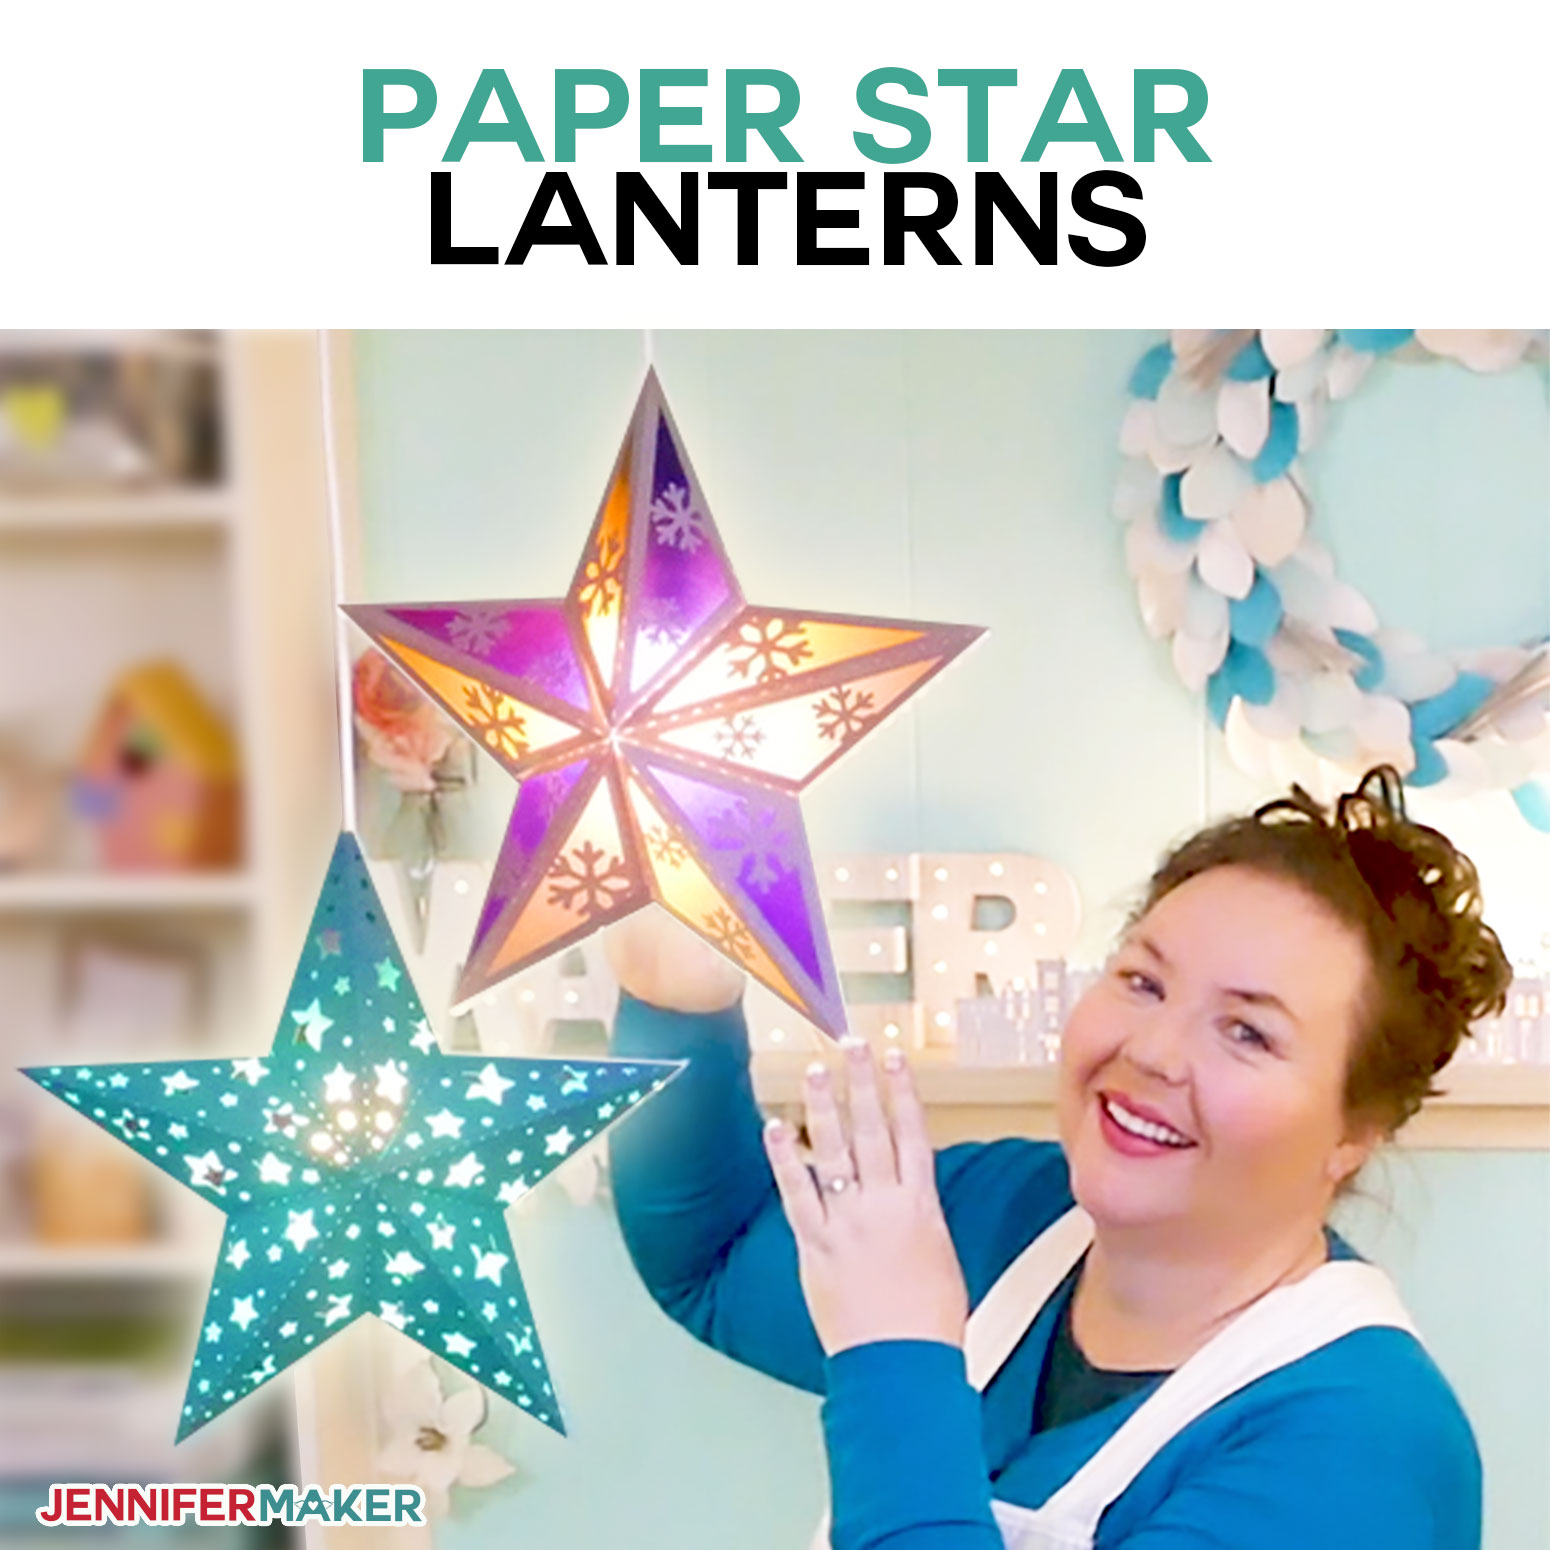 Make Paper Star Lanterns to Brighten Up Your Winter!